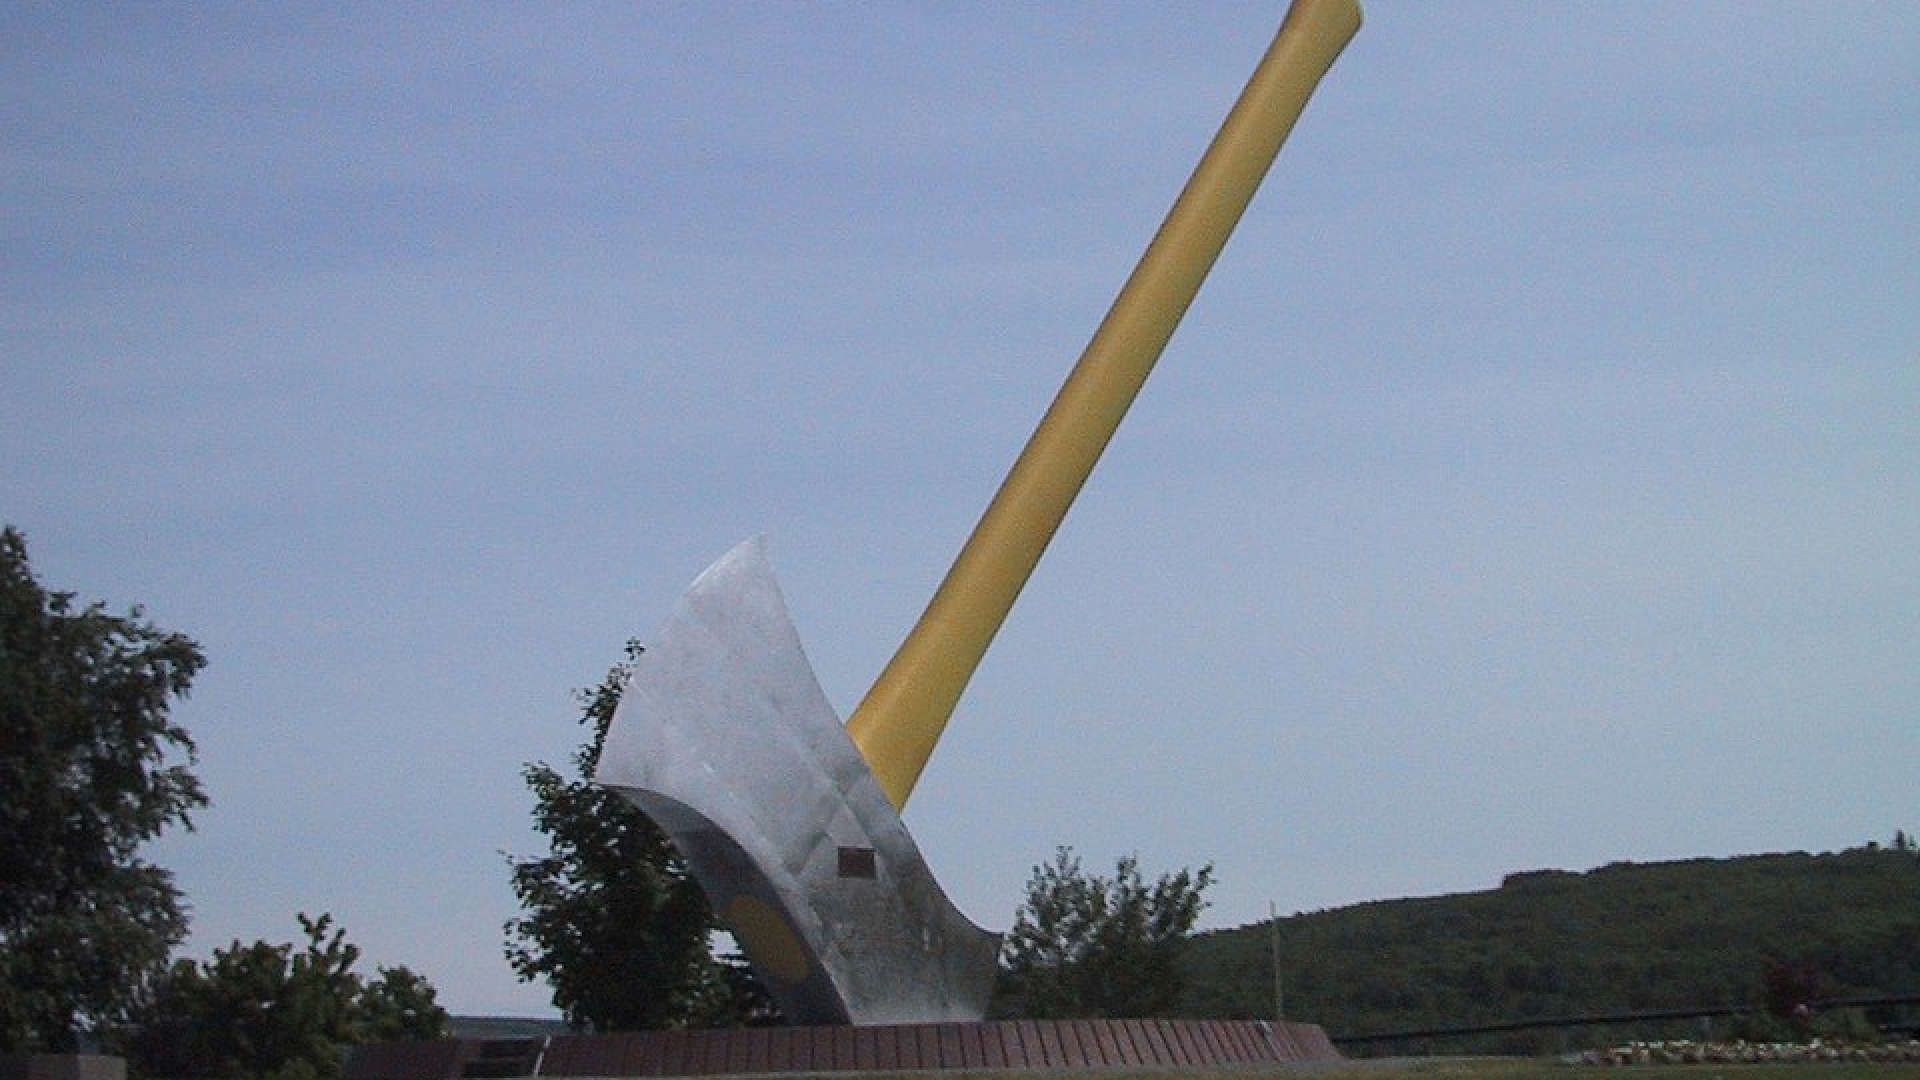 Najveća sjekira na svijetu (Nackawic, Kanada)